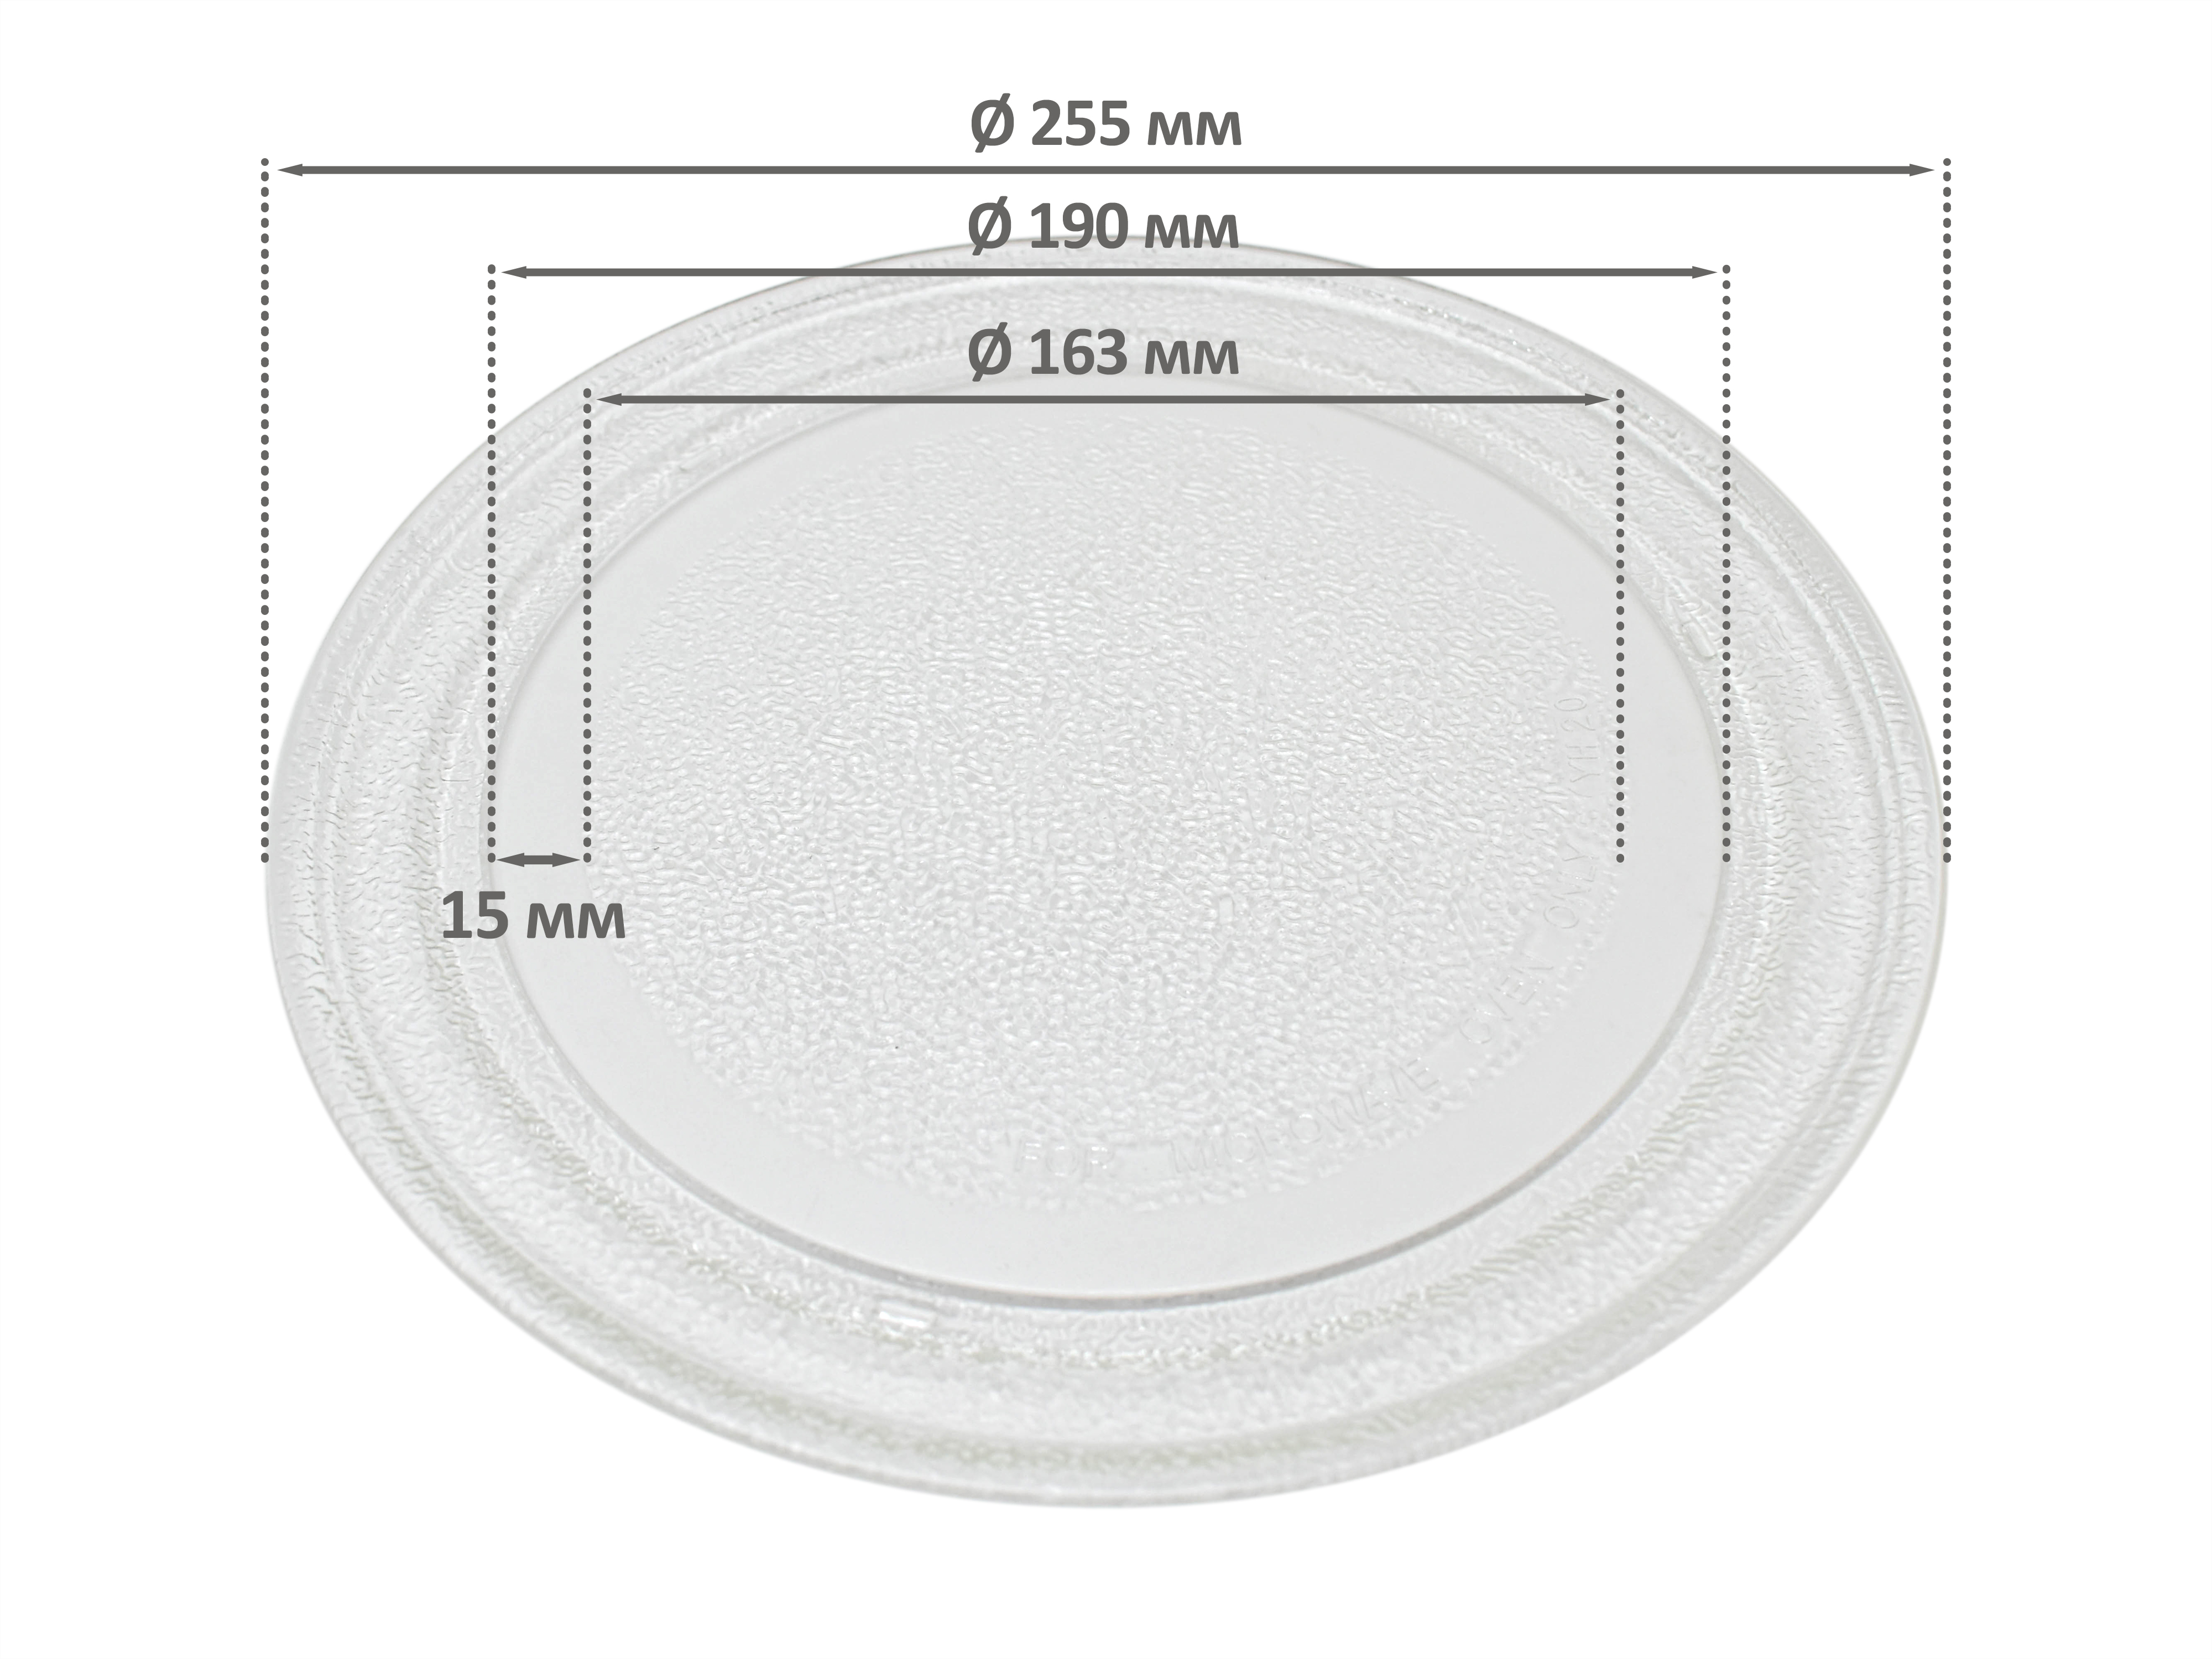 Тарелка для СВЧ для СВЧ микроволновой печи EKPARTS ER255BK тарелка для свч микроволновой печи ekparts kor 610 s